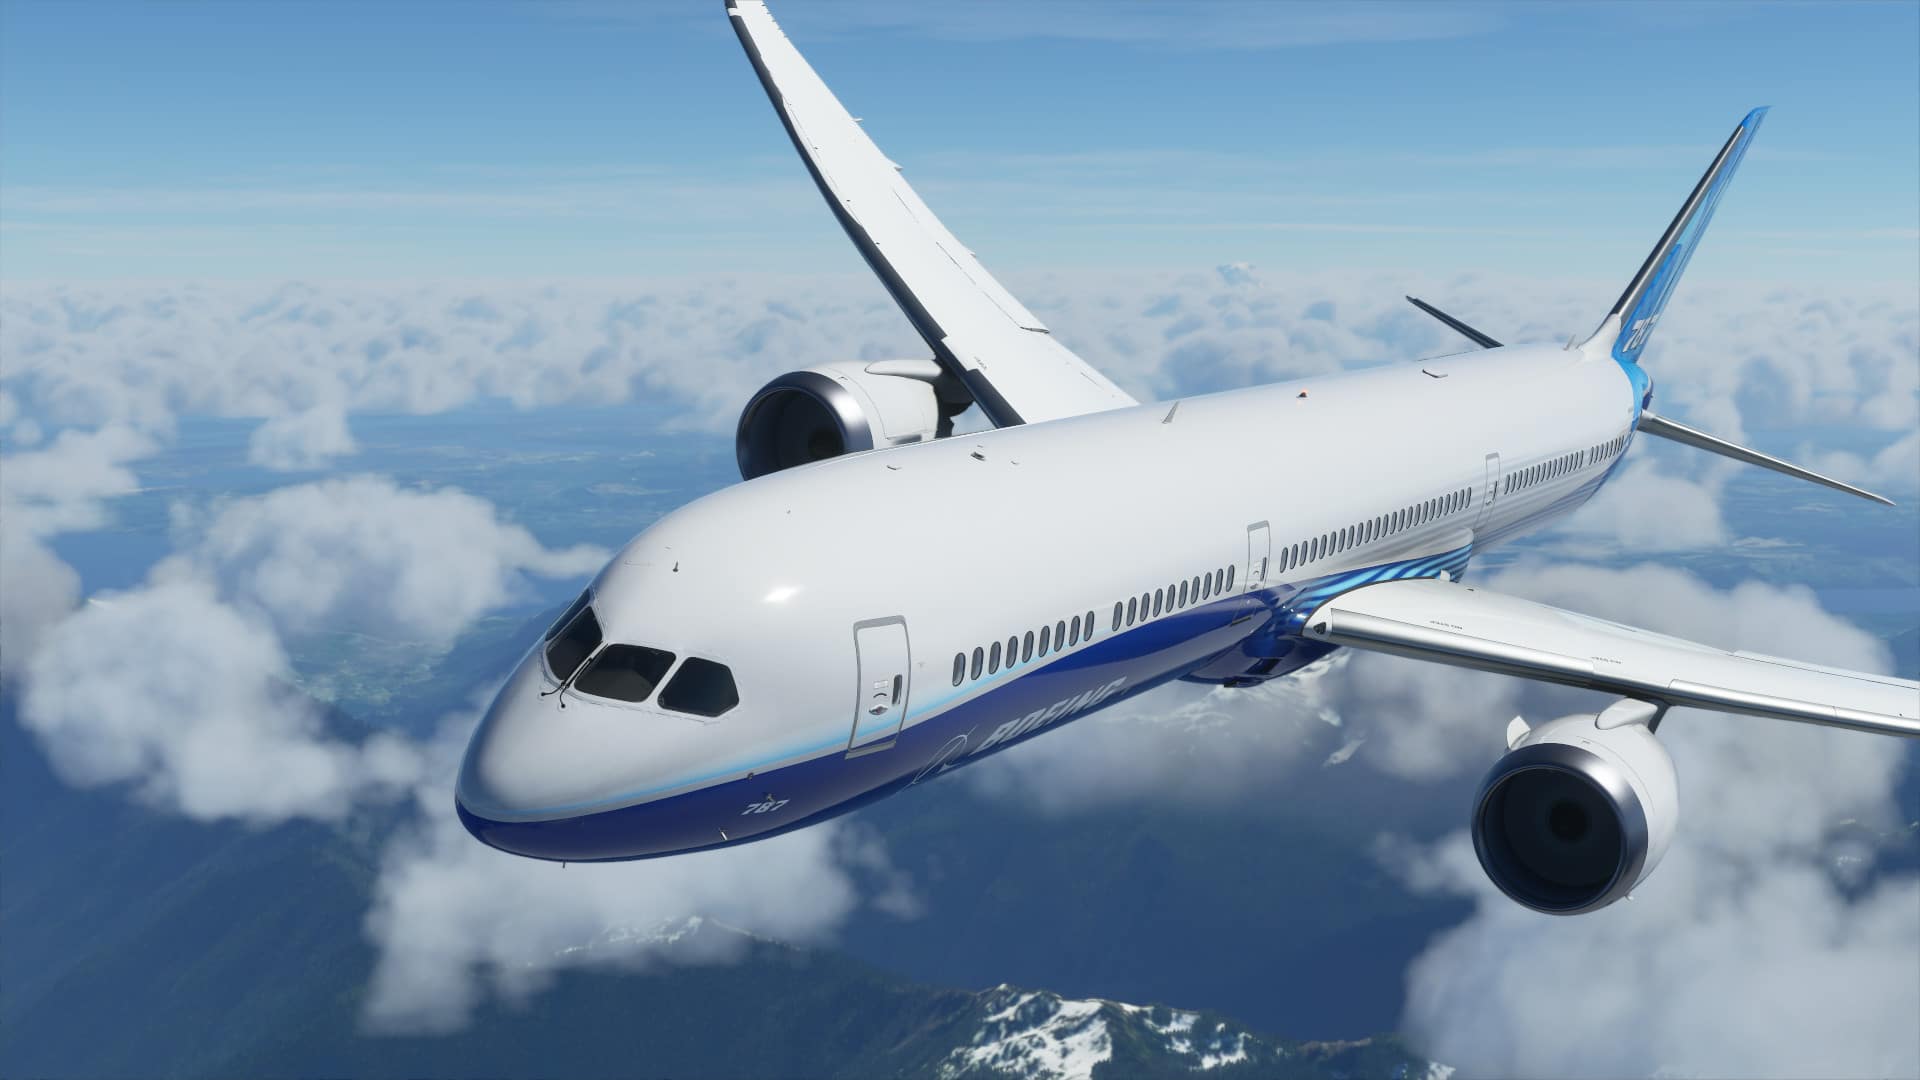 Microsoft Flight Simulator sortira durant l'été 2021 sur ...